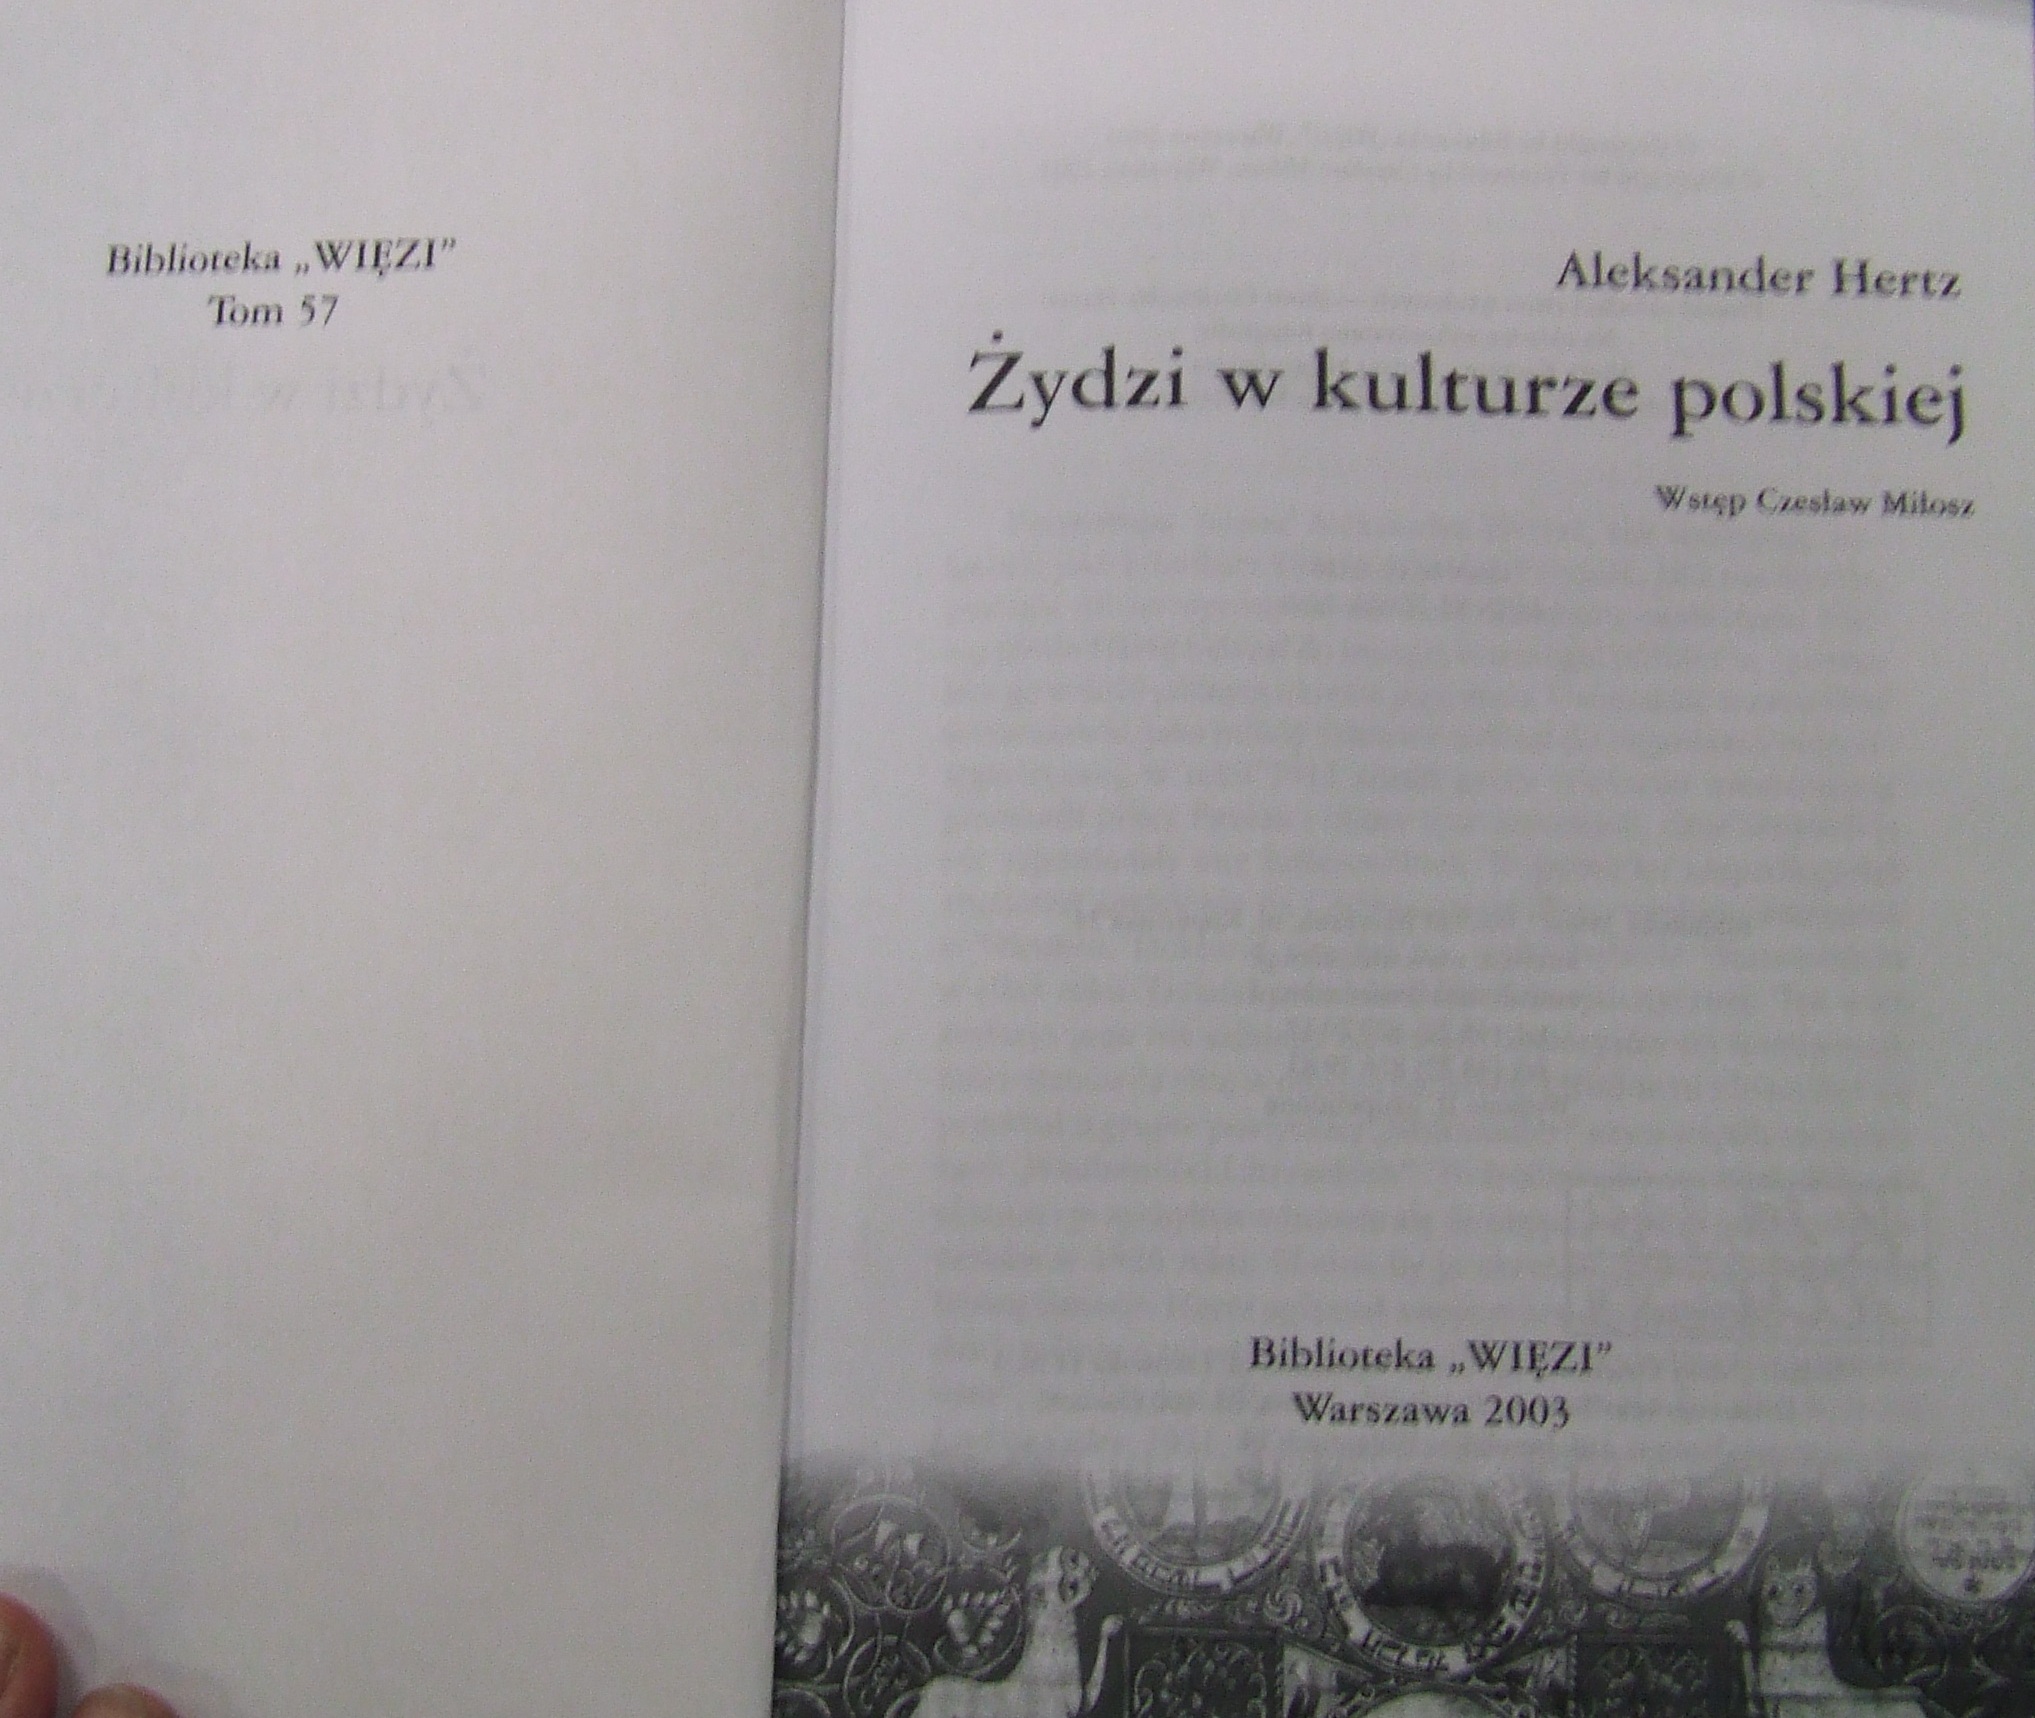 Hertz Żydzi w kulturze polskiej - DSCF0978.JPG